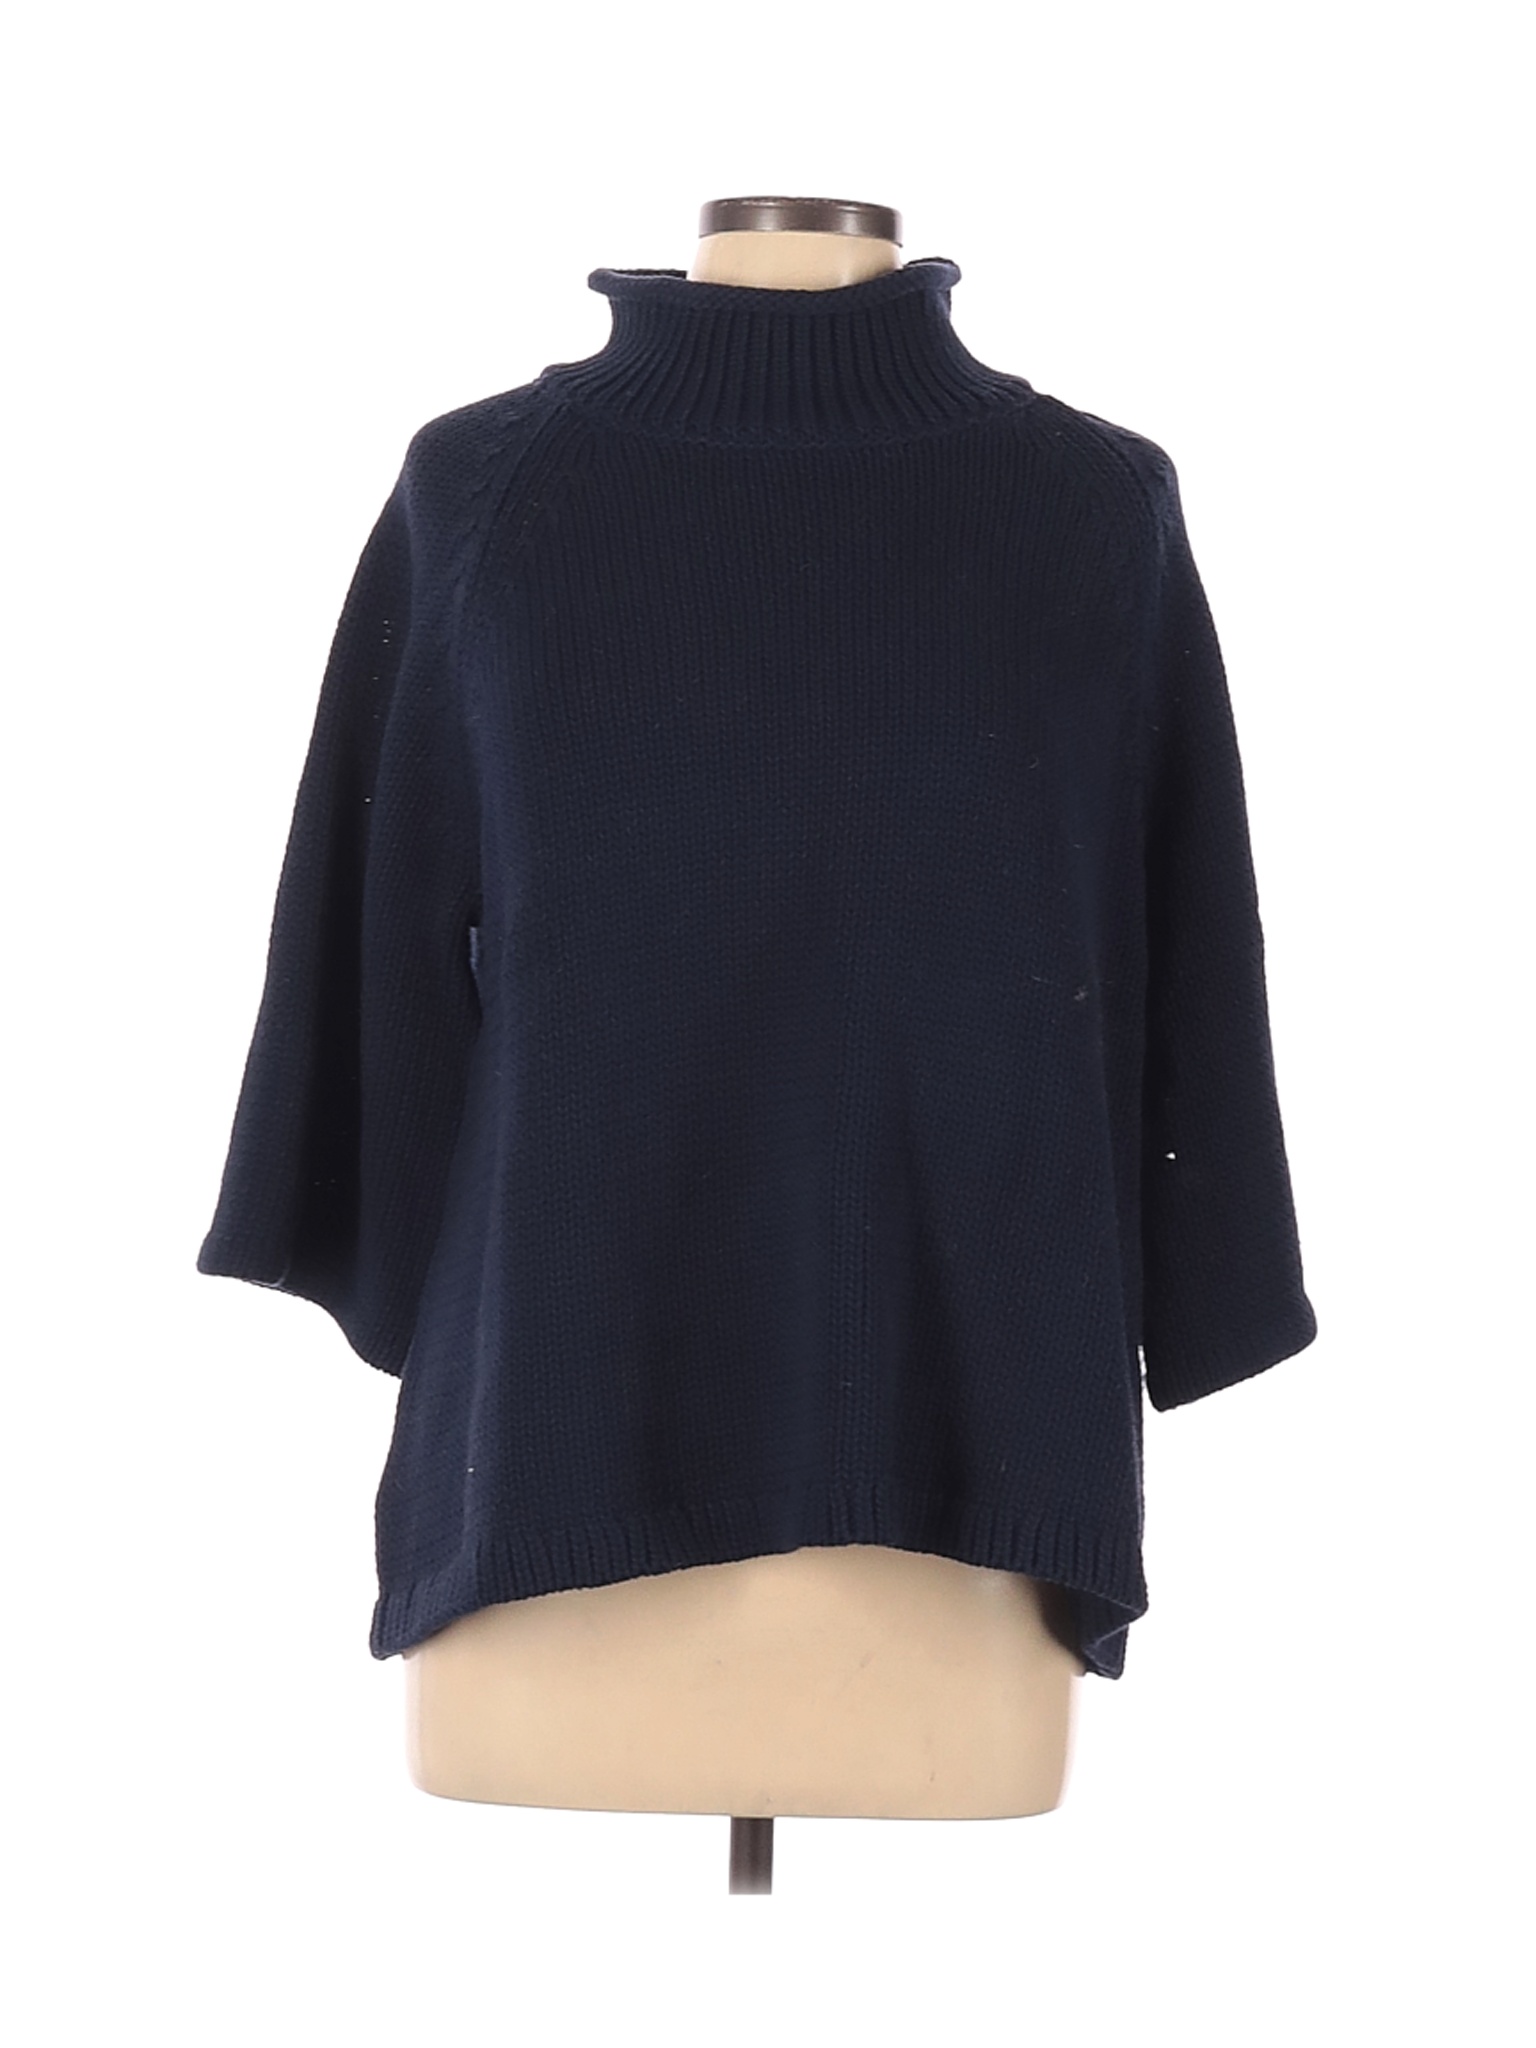 Ann Taylor LOFT Women Blue Turtleneck Sweater XL | eBay